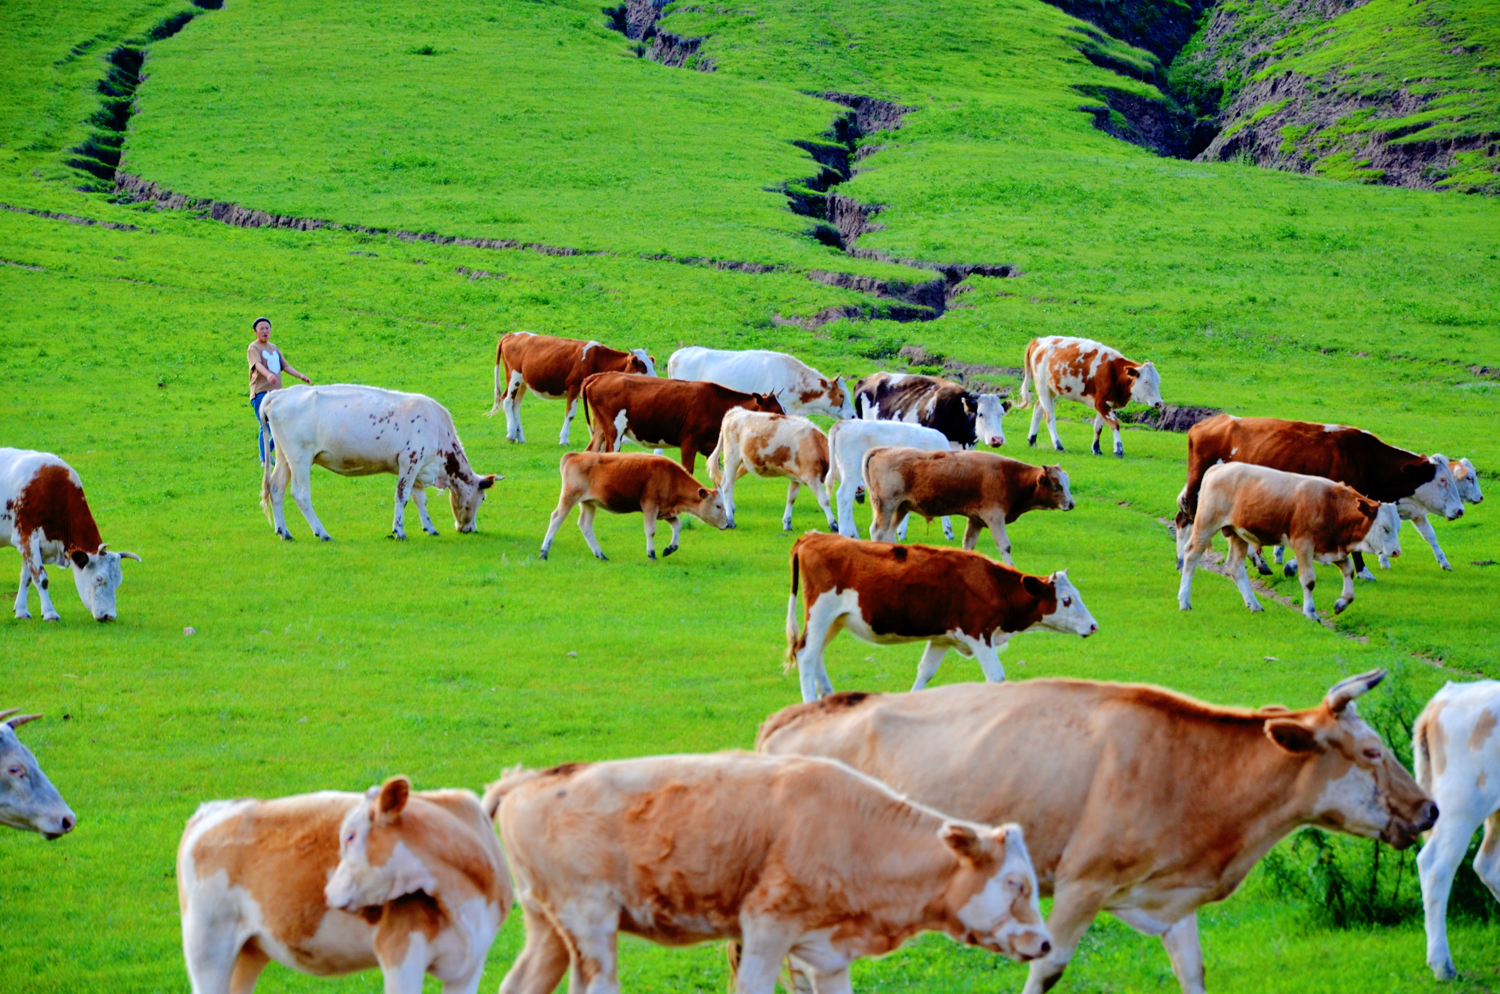 经过几年的经营，海禄澳洲牧场已经成长为成熟、优质的养殖牧场，已累计为国内多家大中型乳企以及西部贫困地区共引进优质奶牛近5万头。